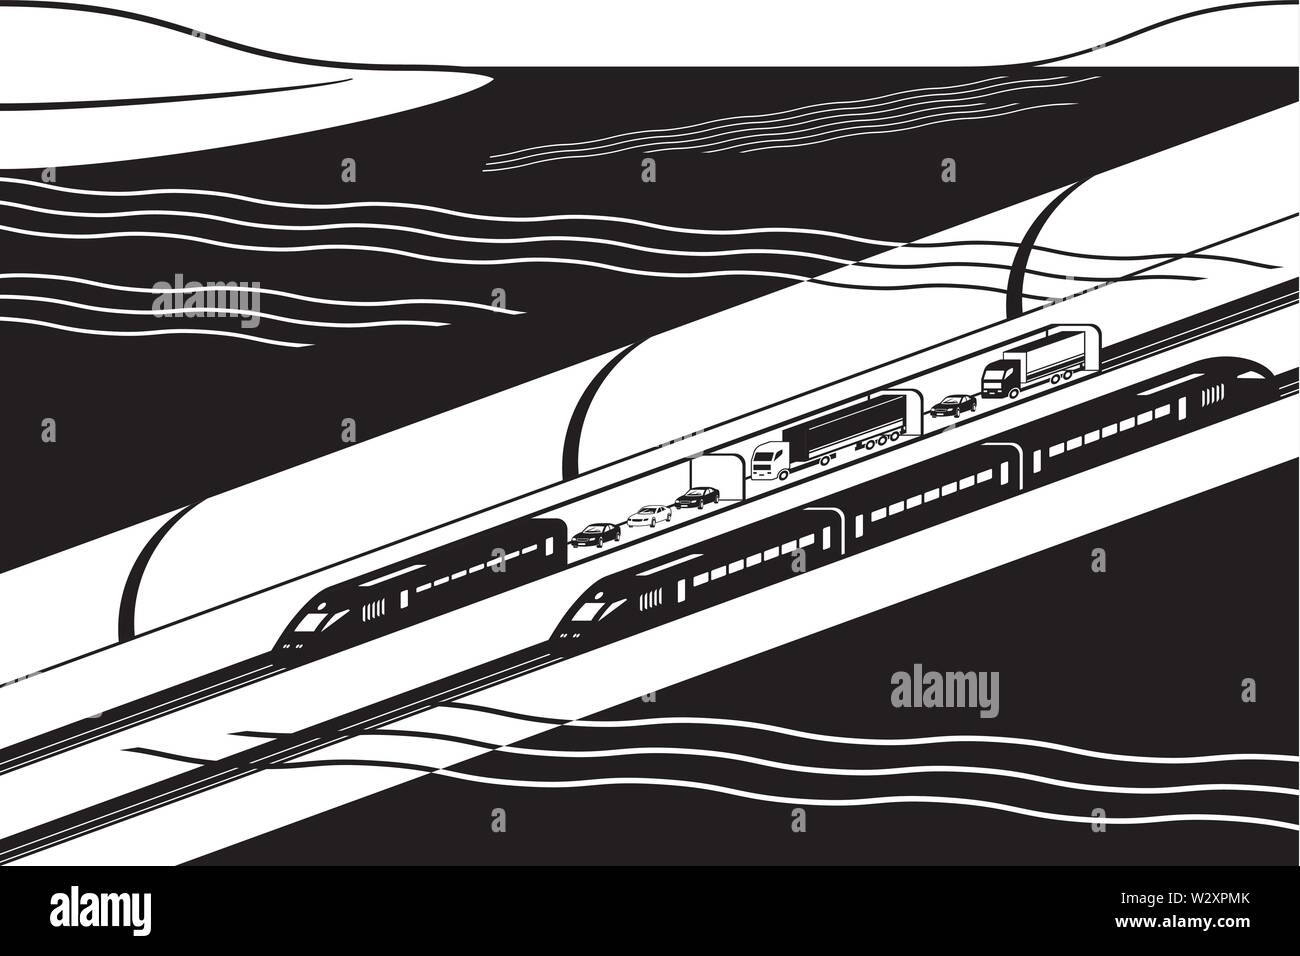 Subacquea tunnel ferroviario con il trasporto di merci e passeggeri treni - illustrazione vettoriale Illustrazione Vettoriale